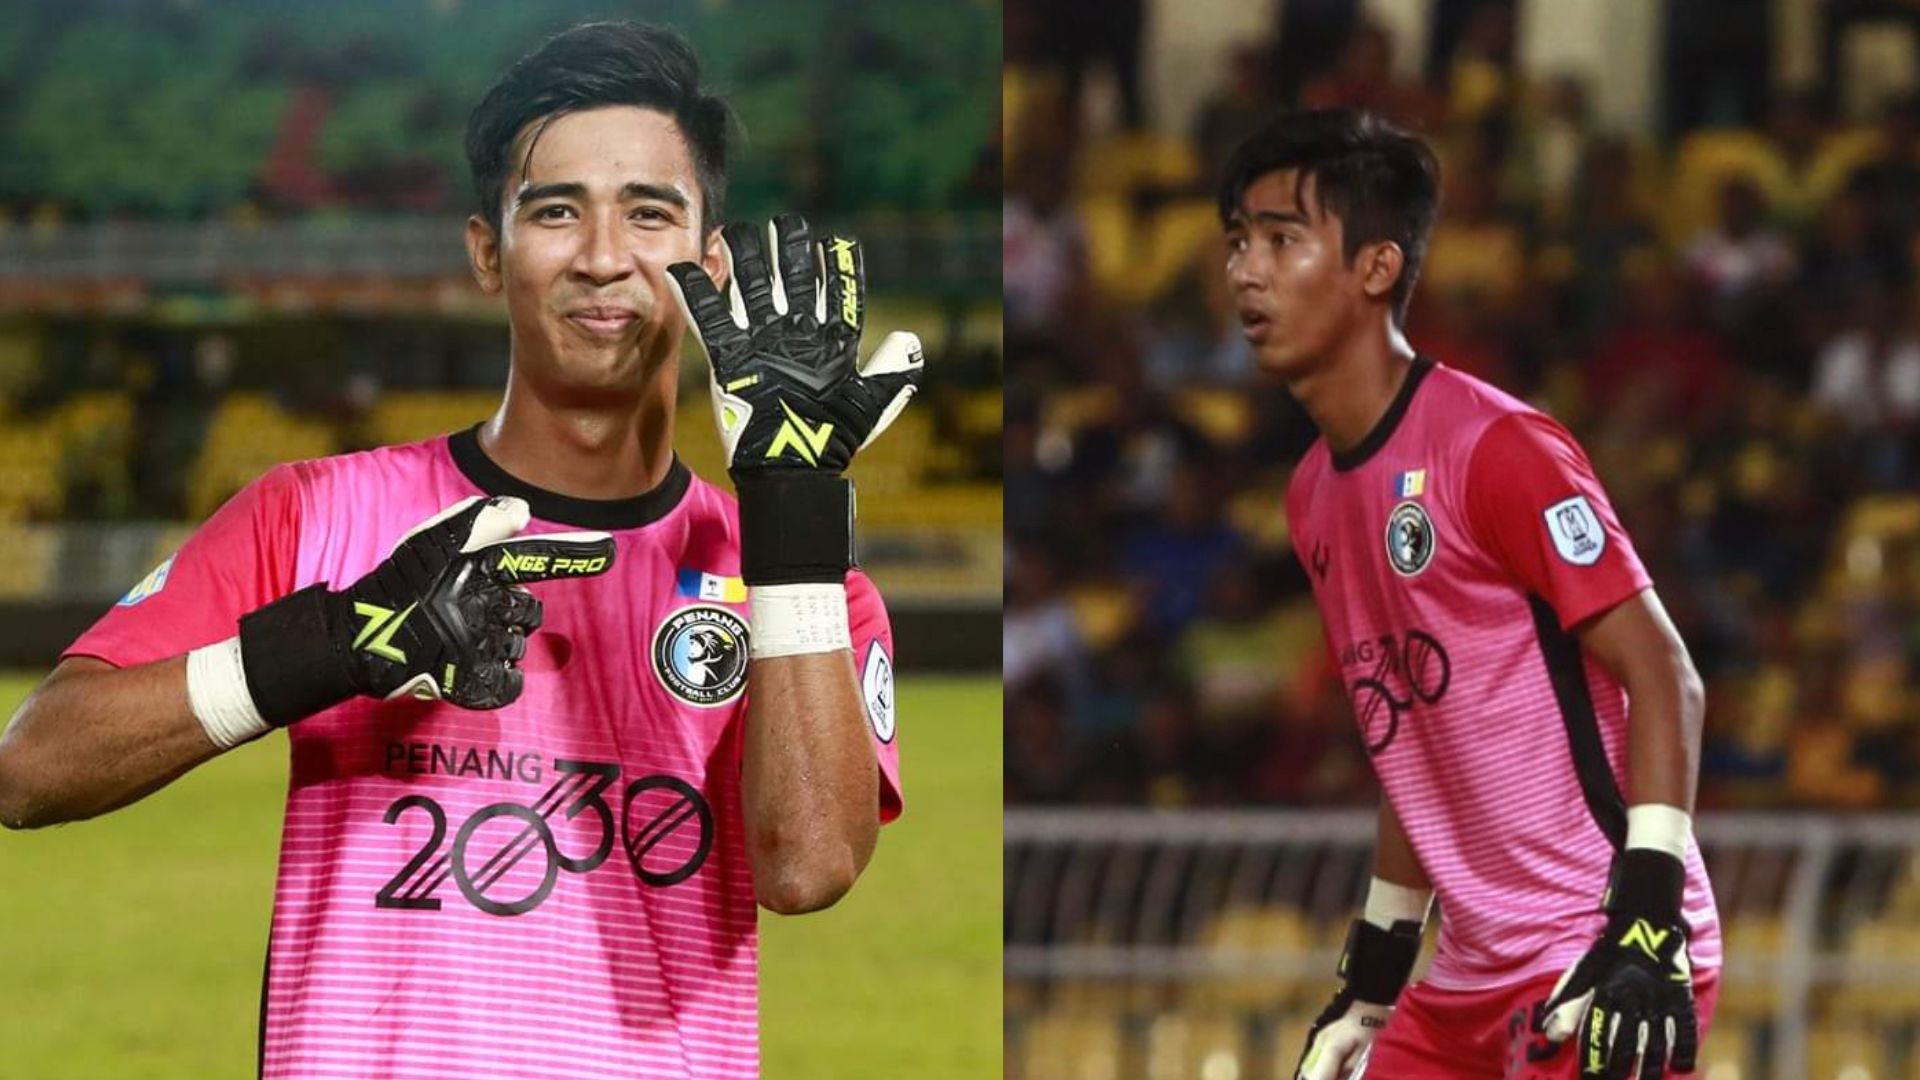 Penjaga Gol Penang Sudah Ada Senarai Sepakan Penalti Pemain Kedah?